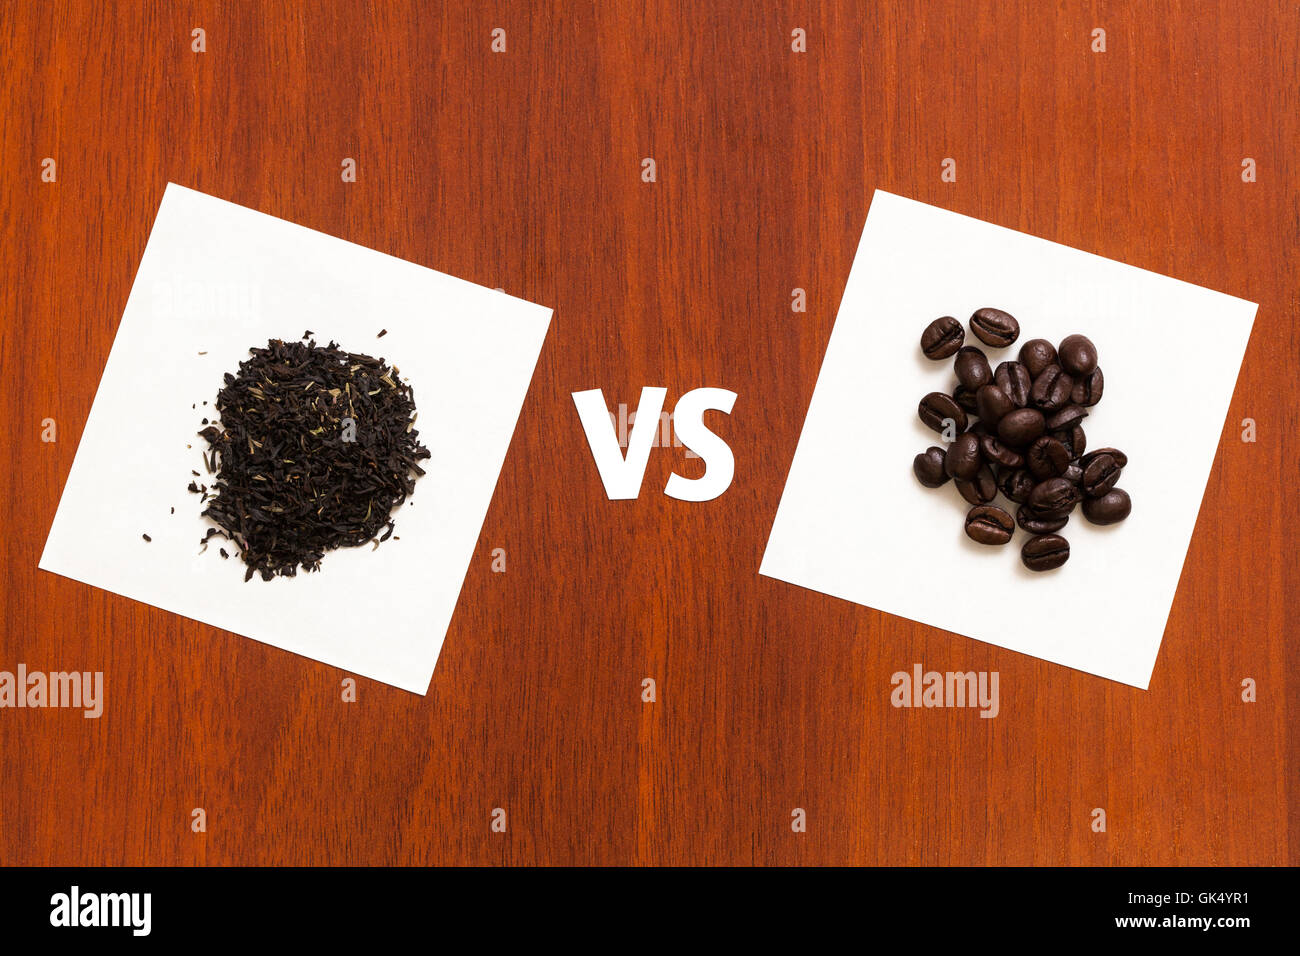 Tè Caffè vs. Abstract immagine concettuale su tavola Foto Stock